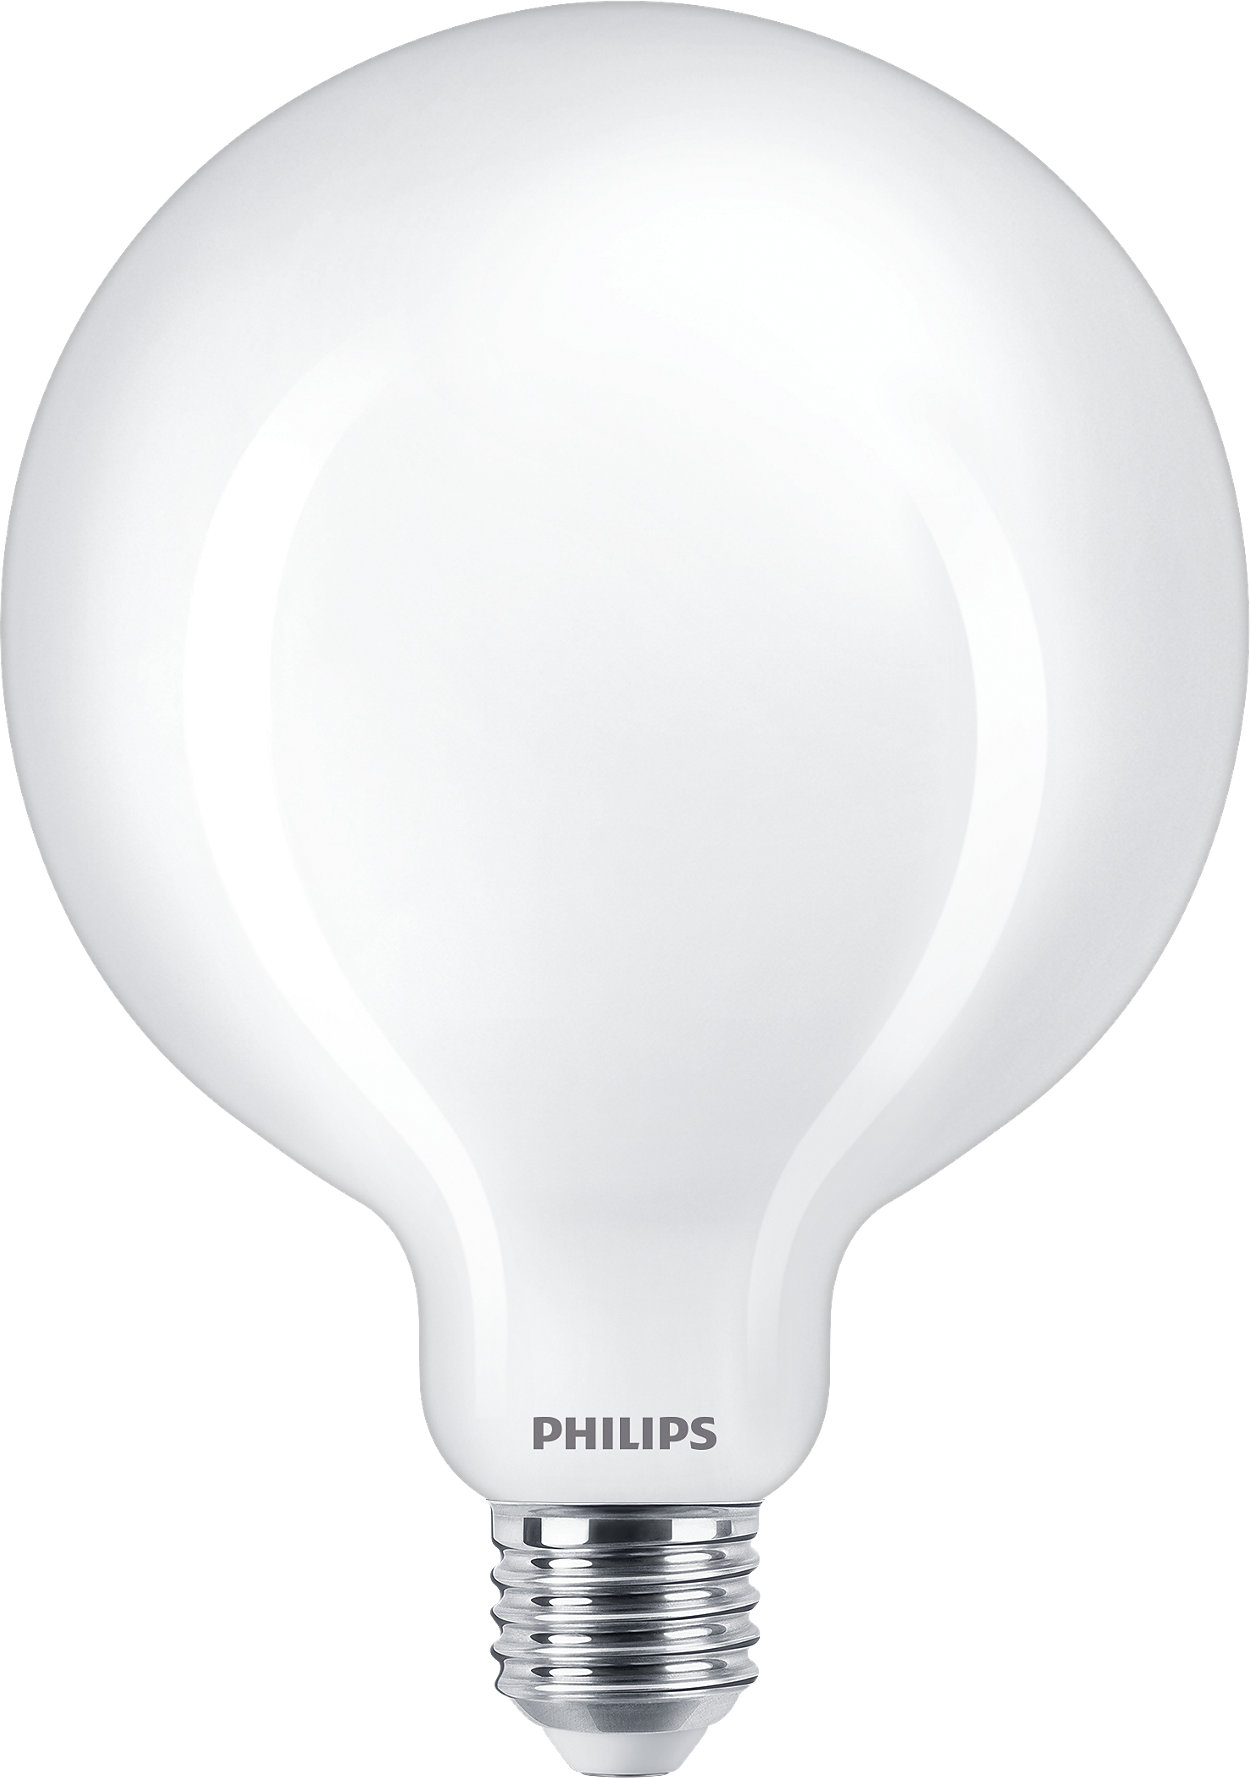 Philips Classic LED-gloeidraadlampen voor decoratieve verlichting.